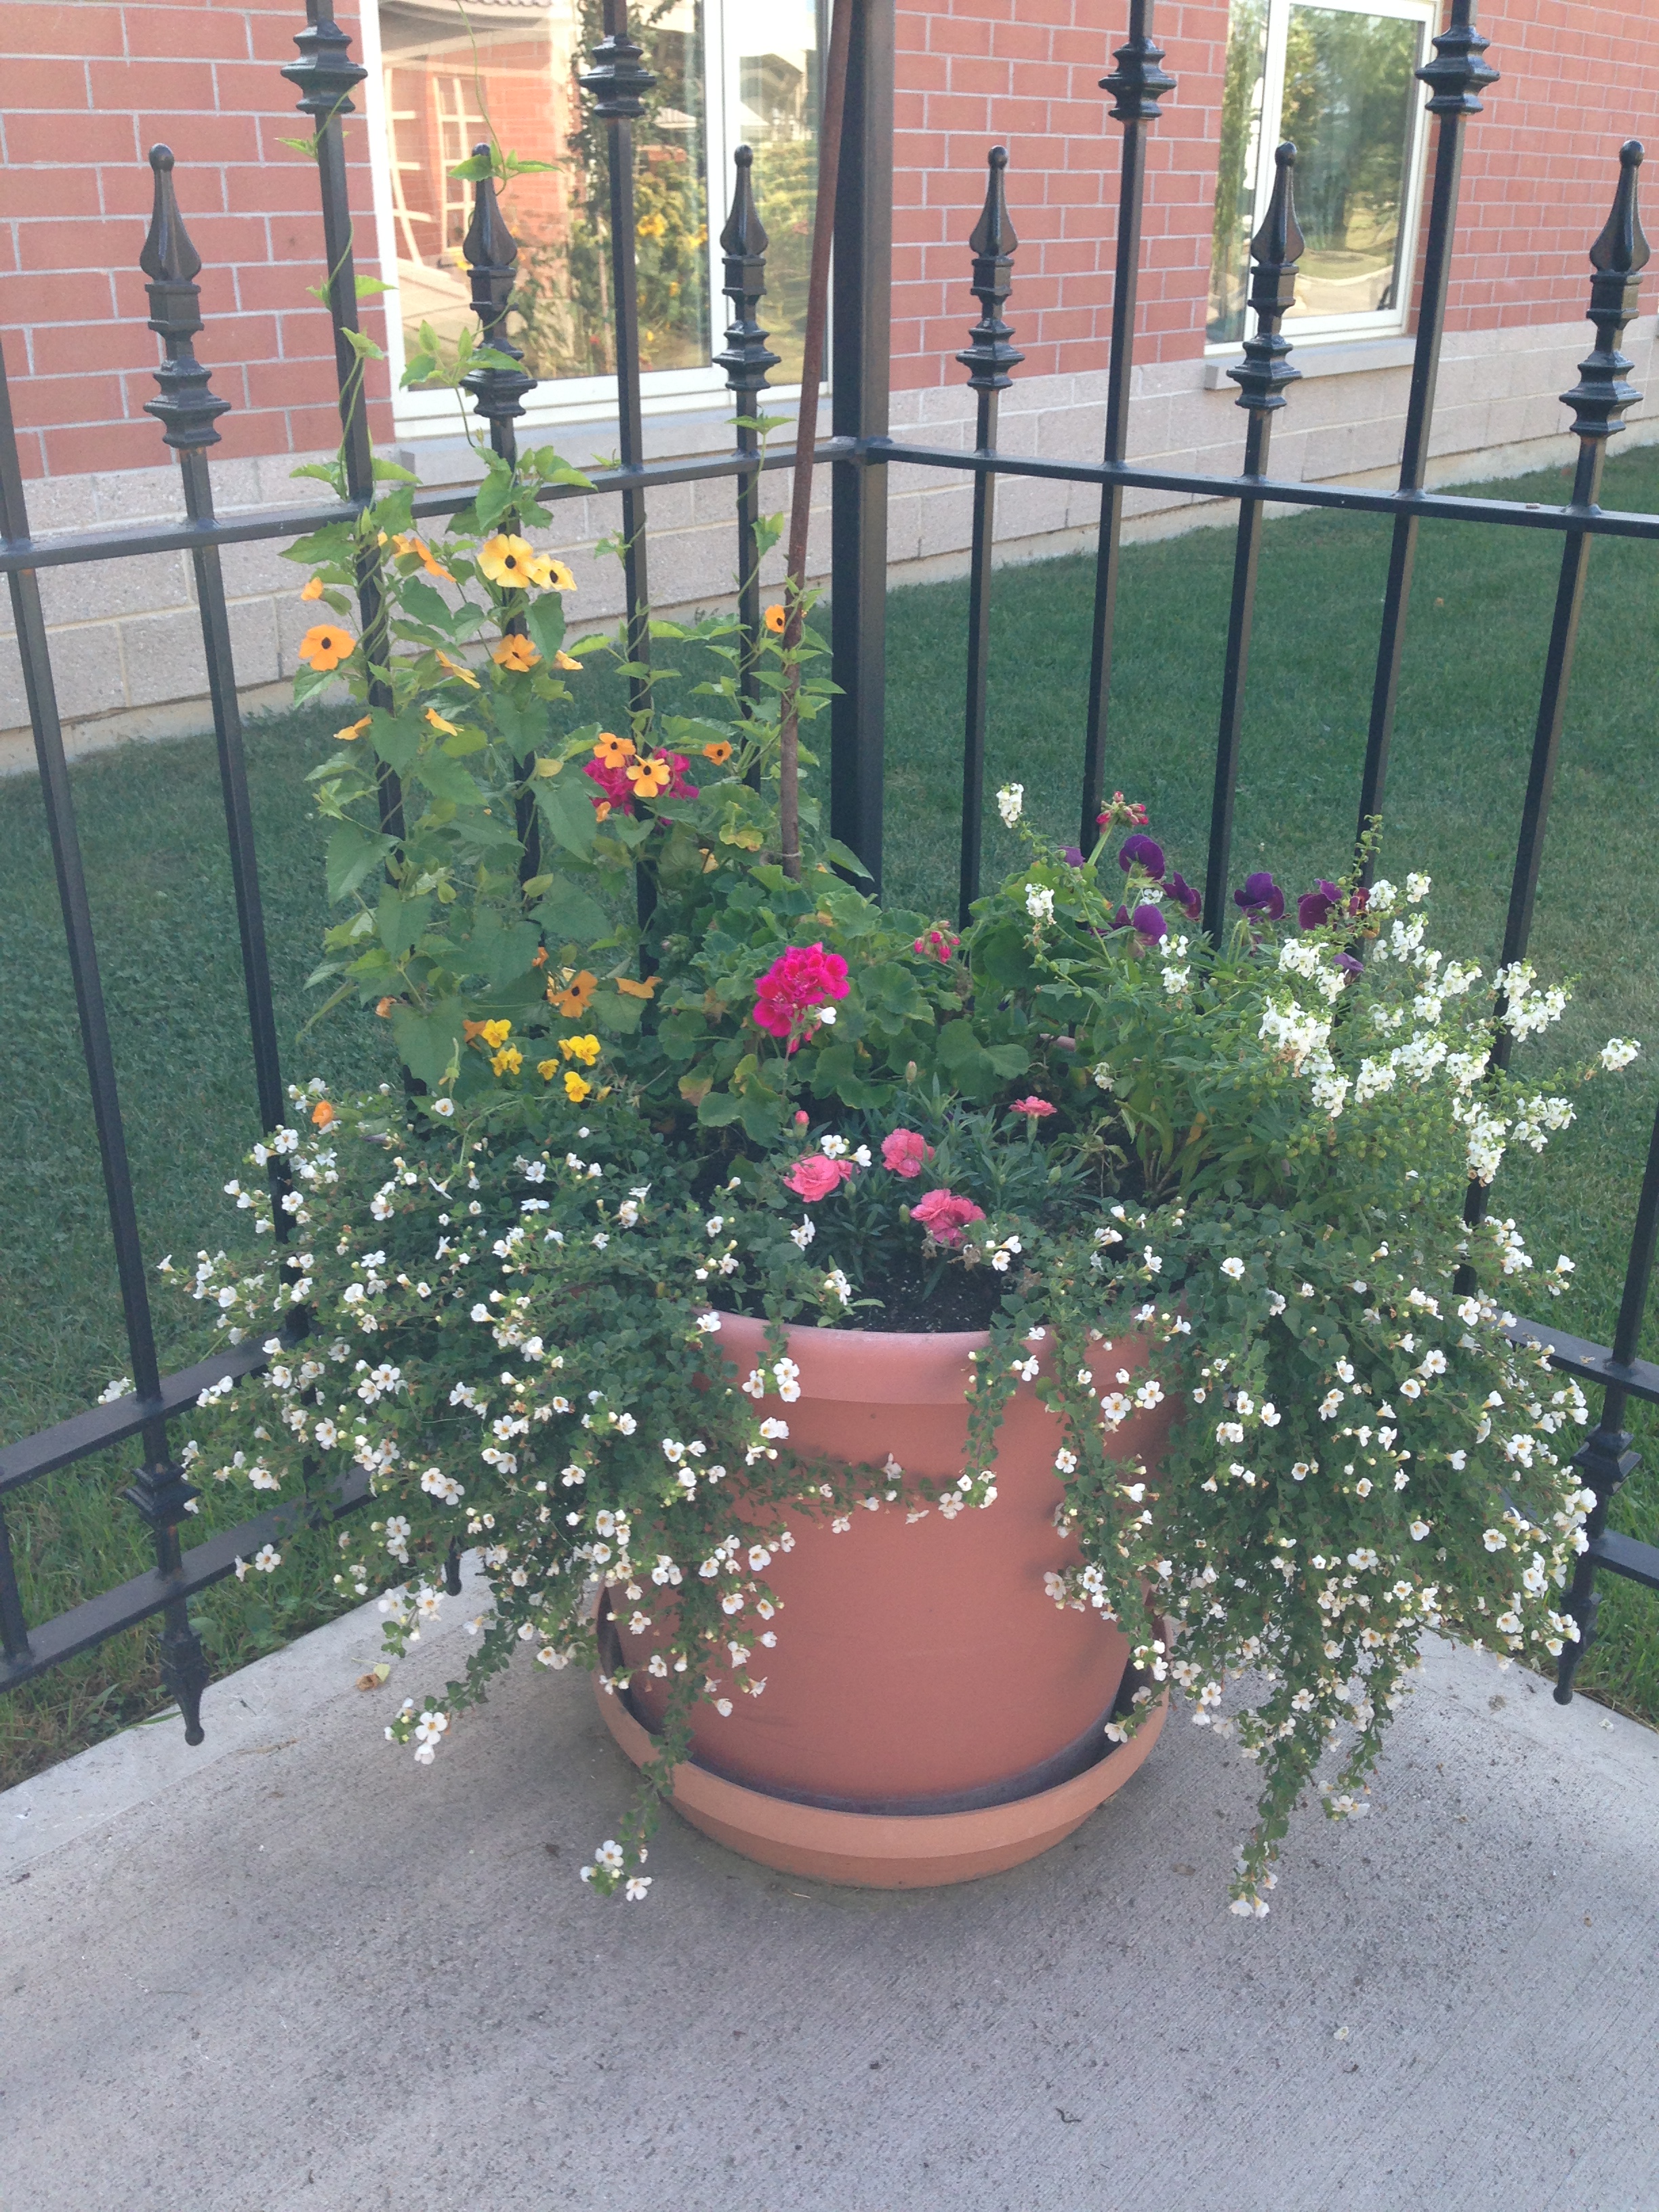 Goutdoor garden pot with spring flowers